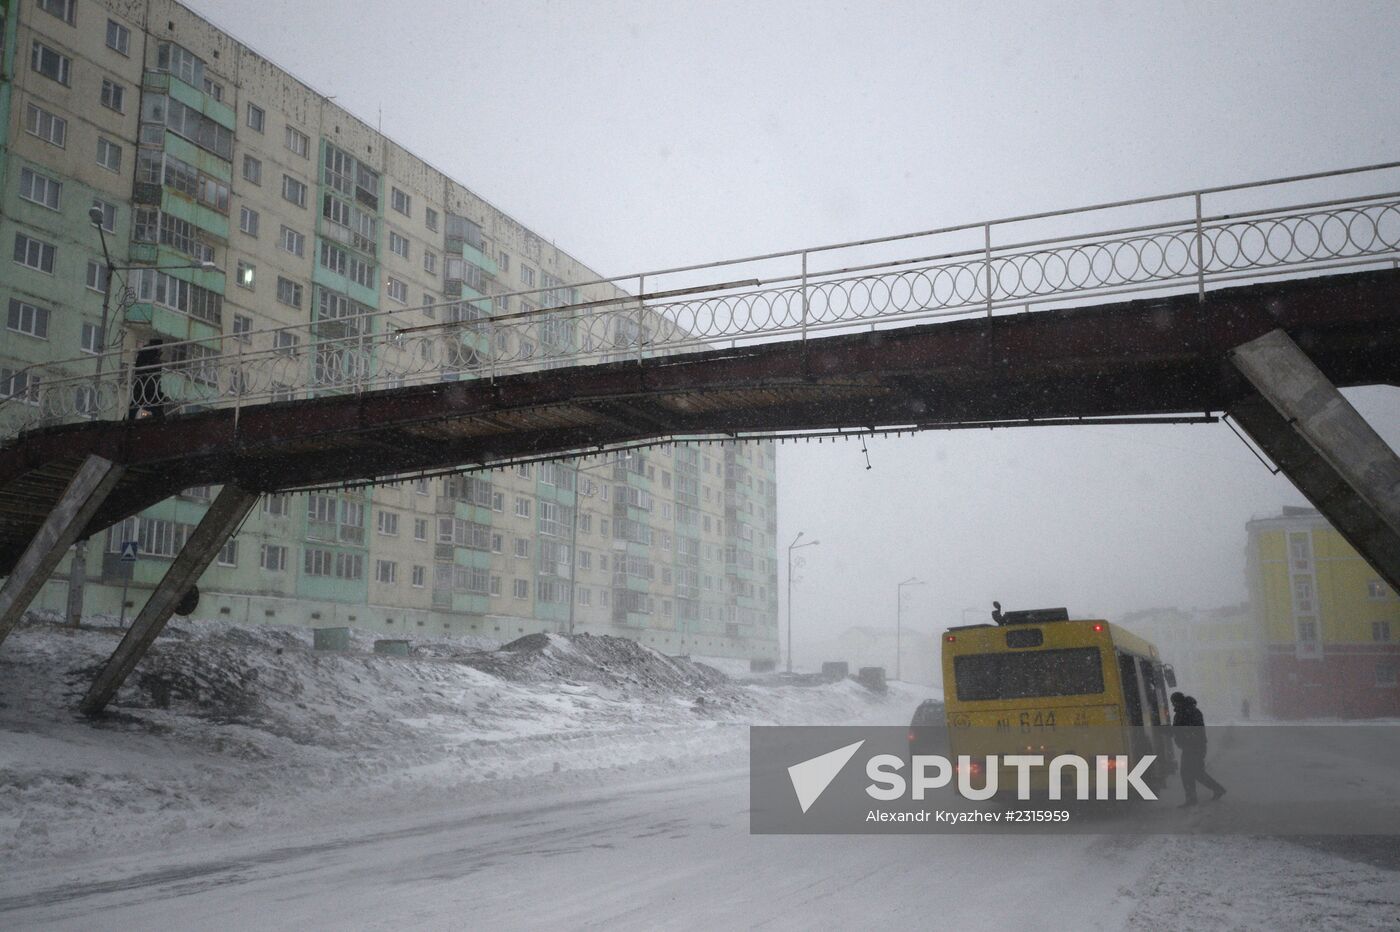 Snowstorm in Norilsk